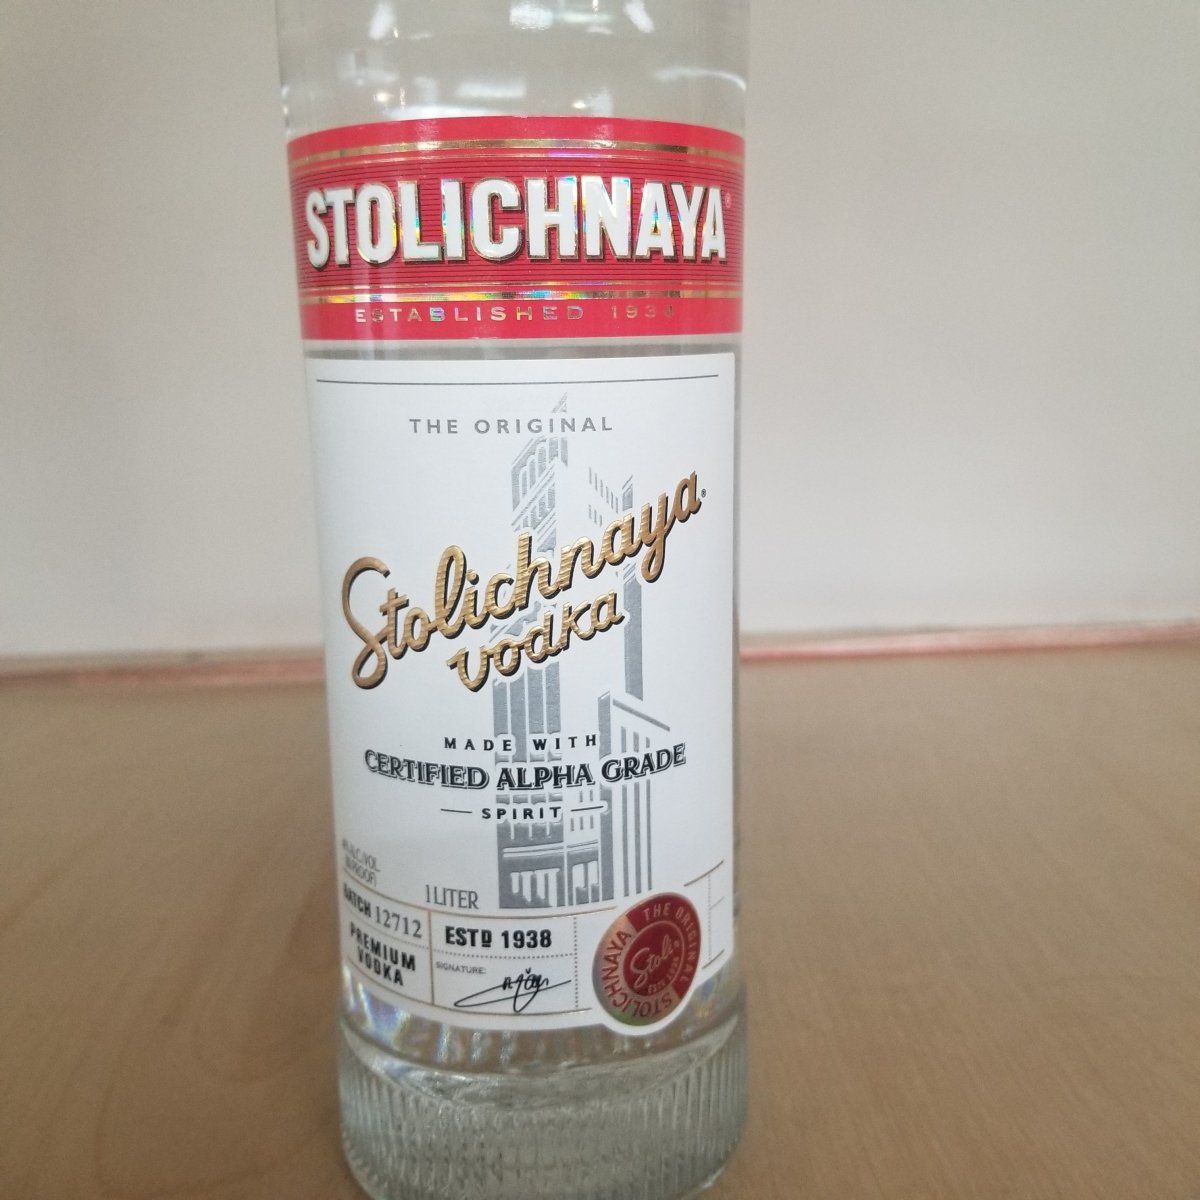 Stolichnaya Vodka - 1 liter